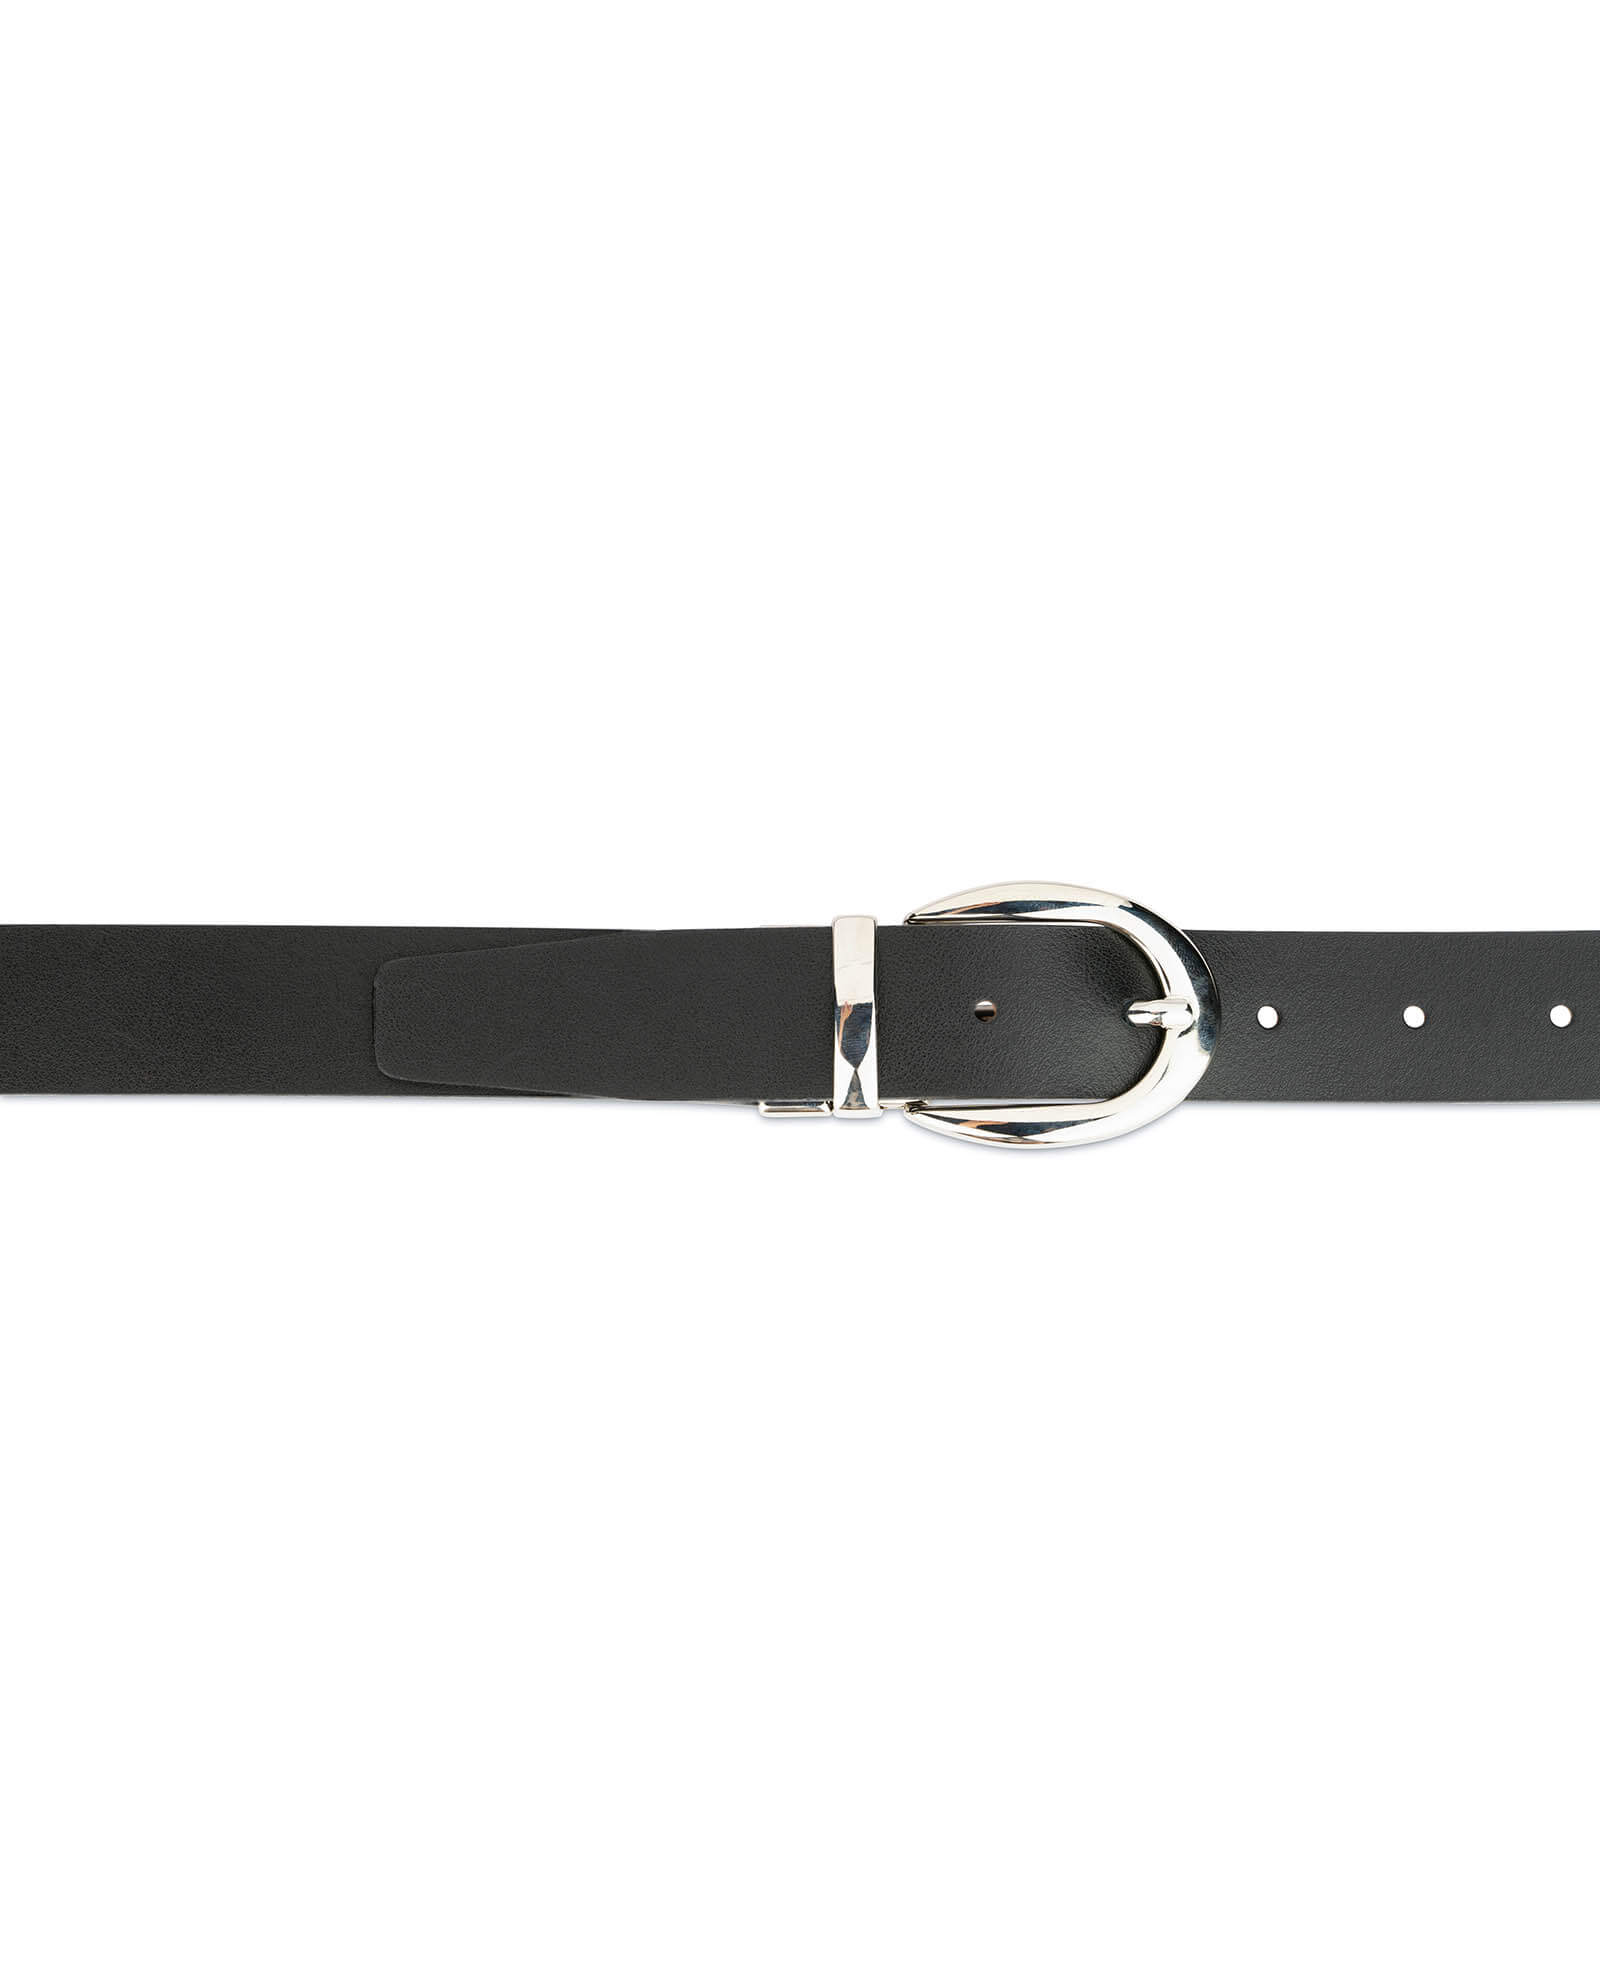 Buy Reversible Leather Belt For Women | Capo Pelle